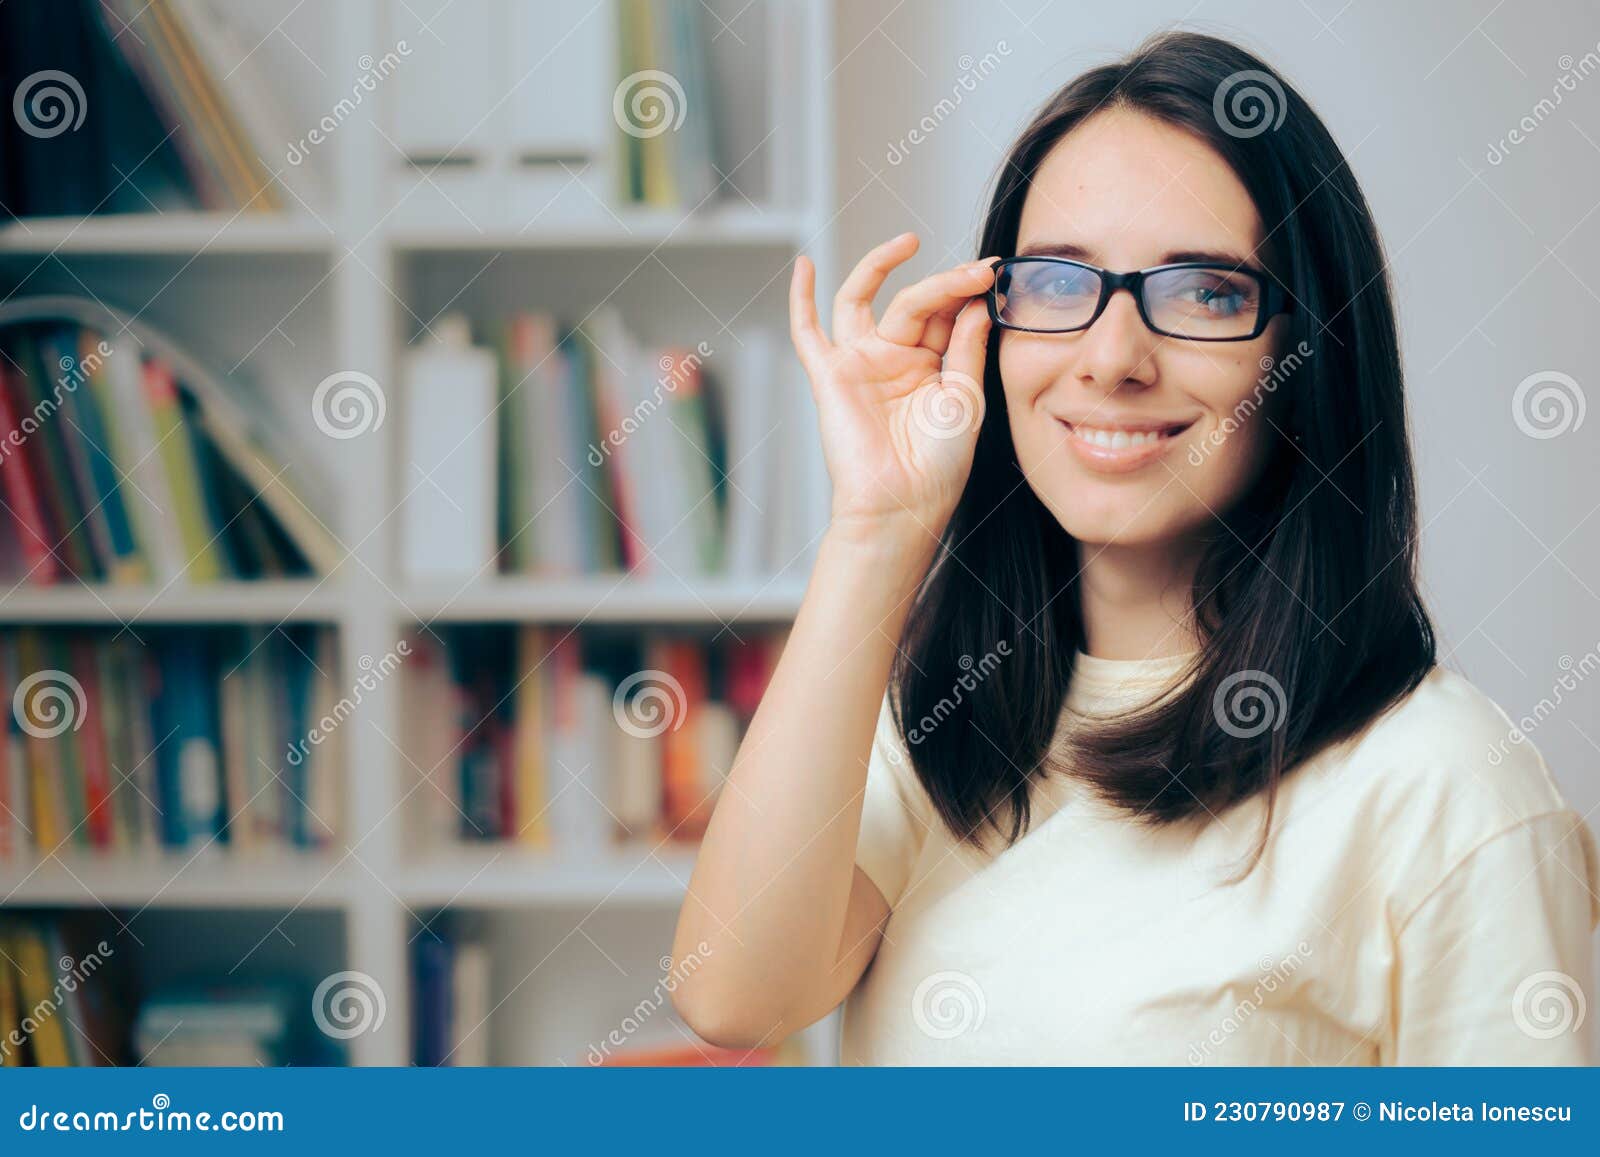 戴眼镜的女生适合哪种短发发型？ - 知乎